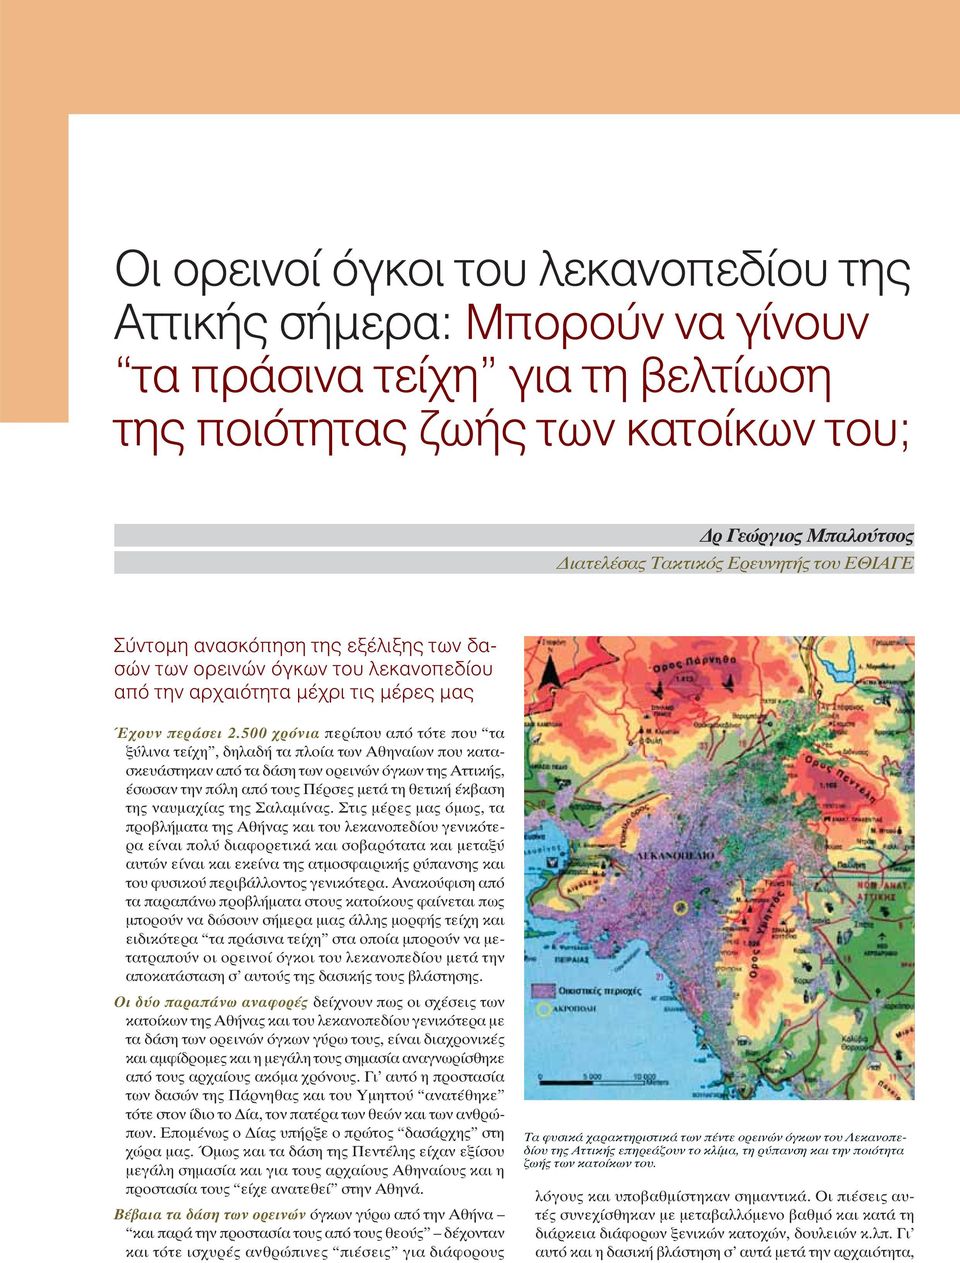 500 χρόνια περίπου από τότε που τα ξύλινα τείχη, δηλαδή τα πλοία των Αθηναίων που κατασκευάστηκαν από τα δάση των ορεινών όγκων της Αττικής, έσωσαν την πόλη από τους Πέρσες μετά τη θετική έκβαση της